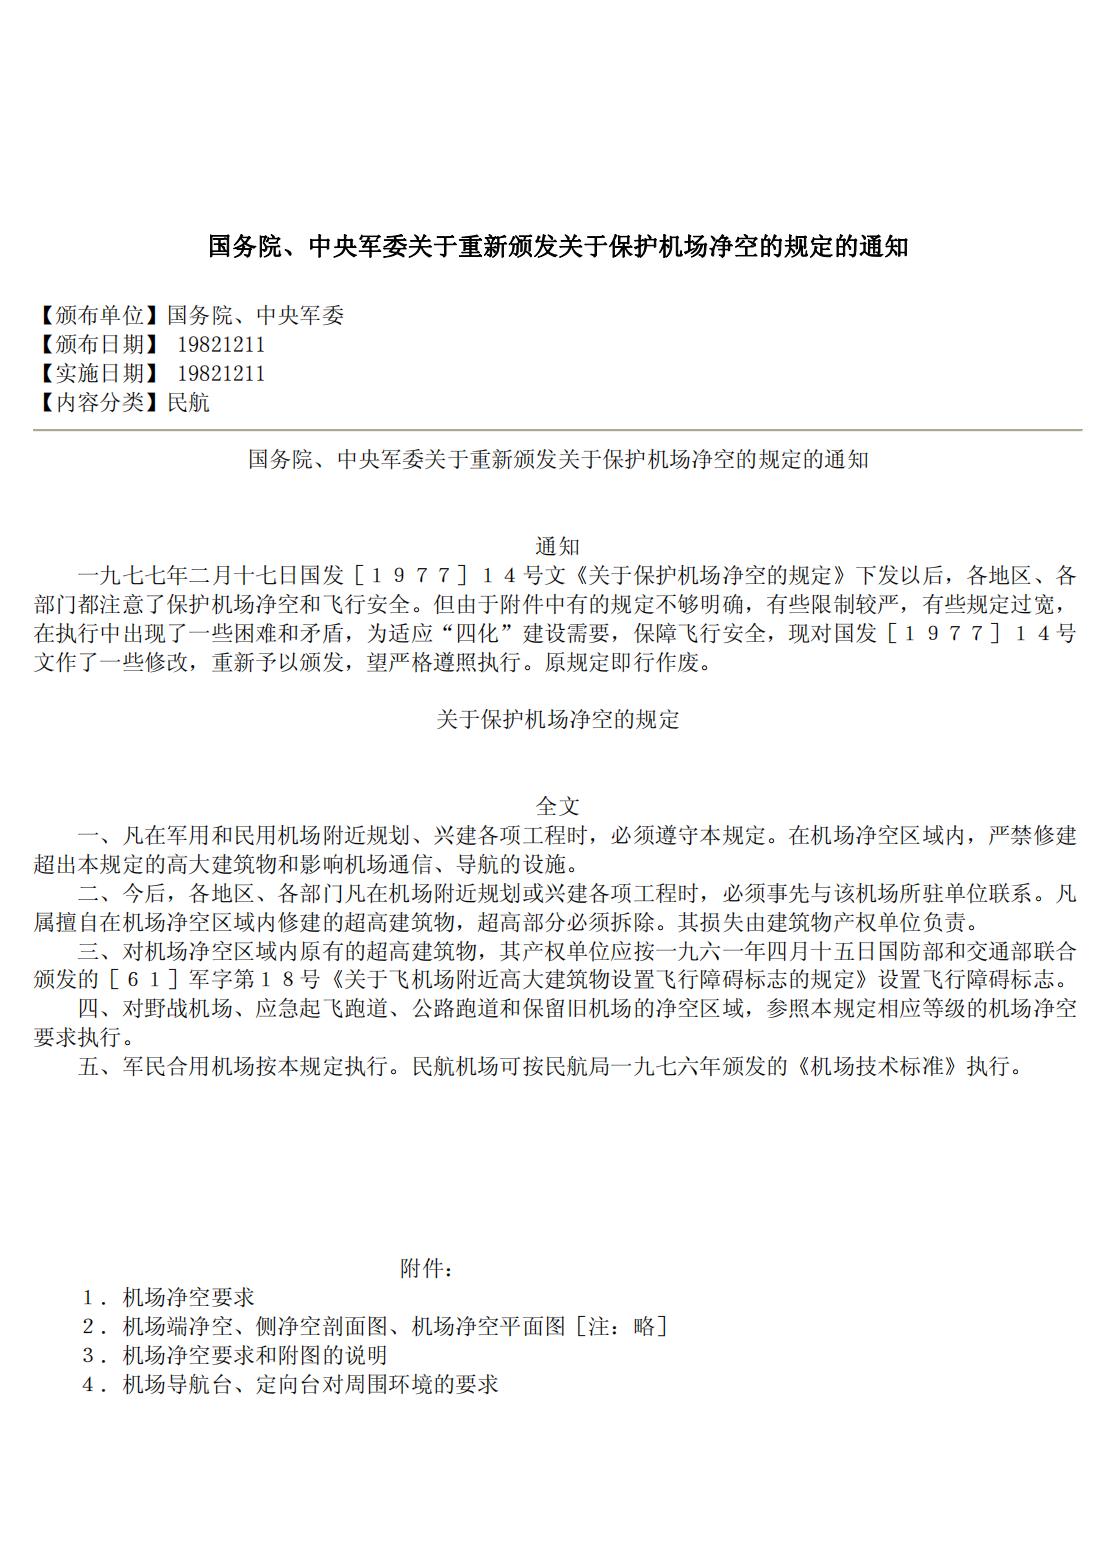 【法例法规】国务院、中央军委关于重新颁发关于保护机场净空的规定的通知